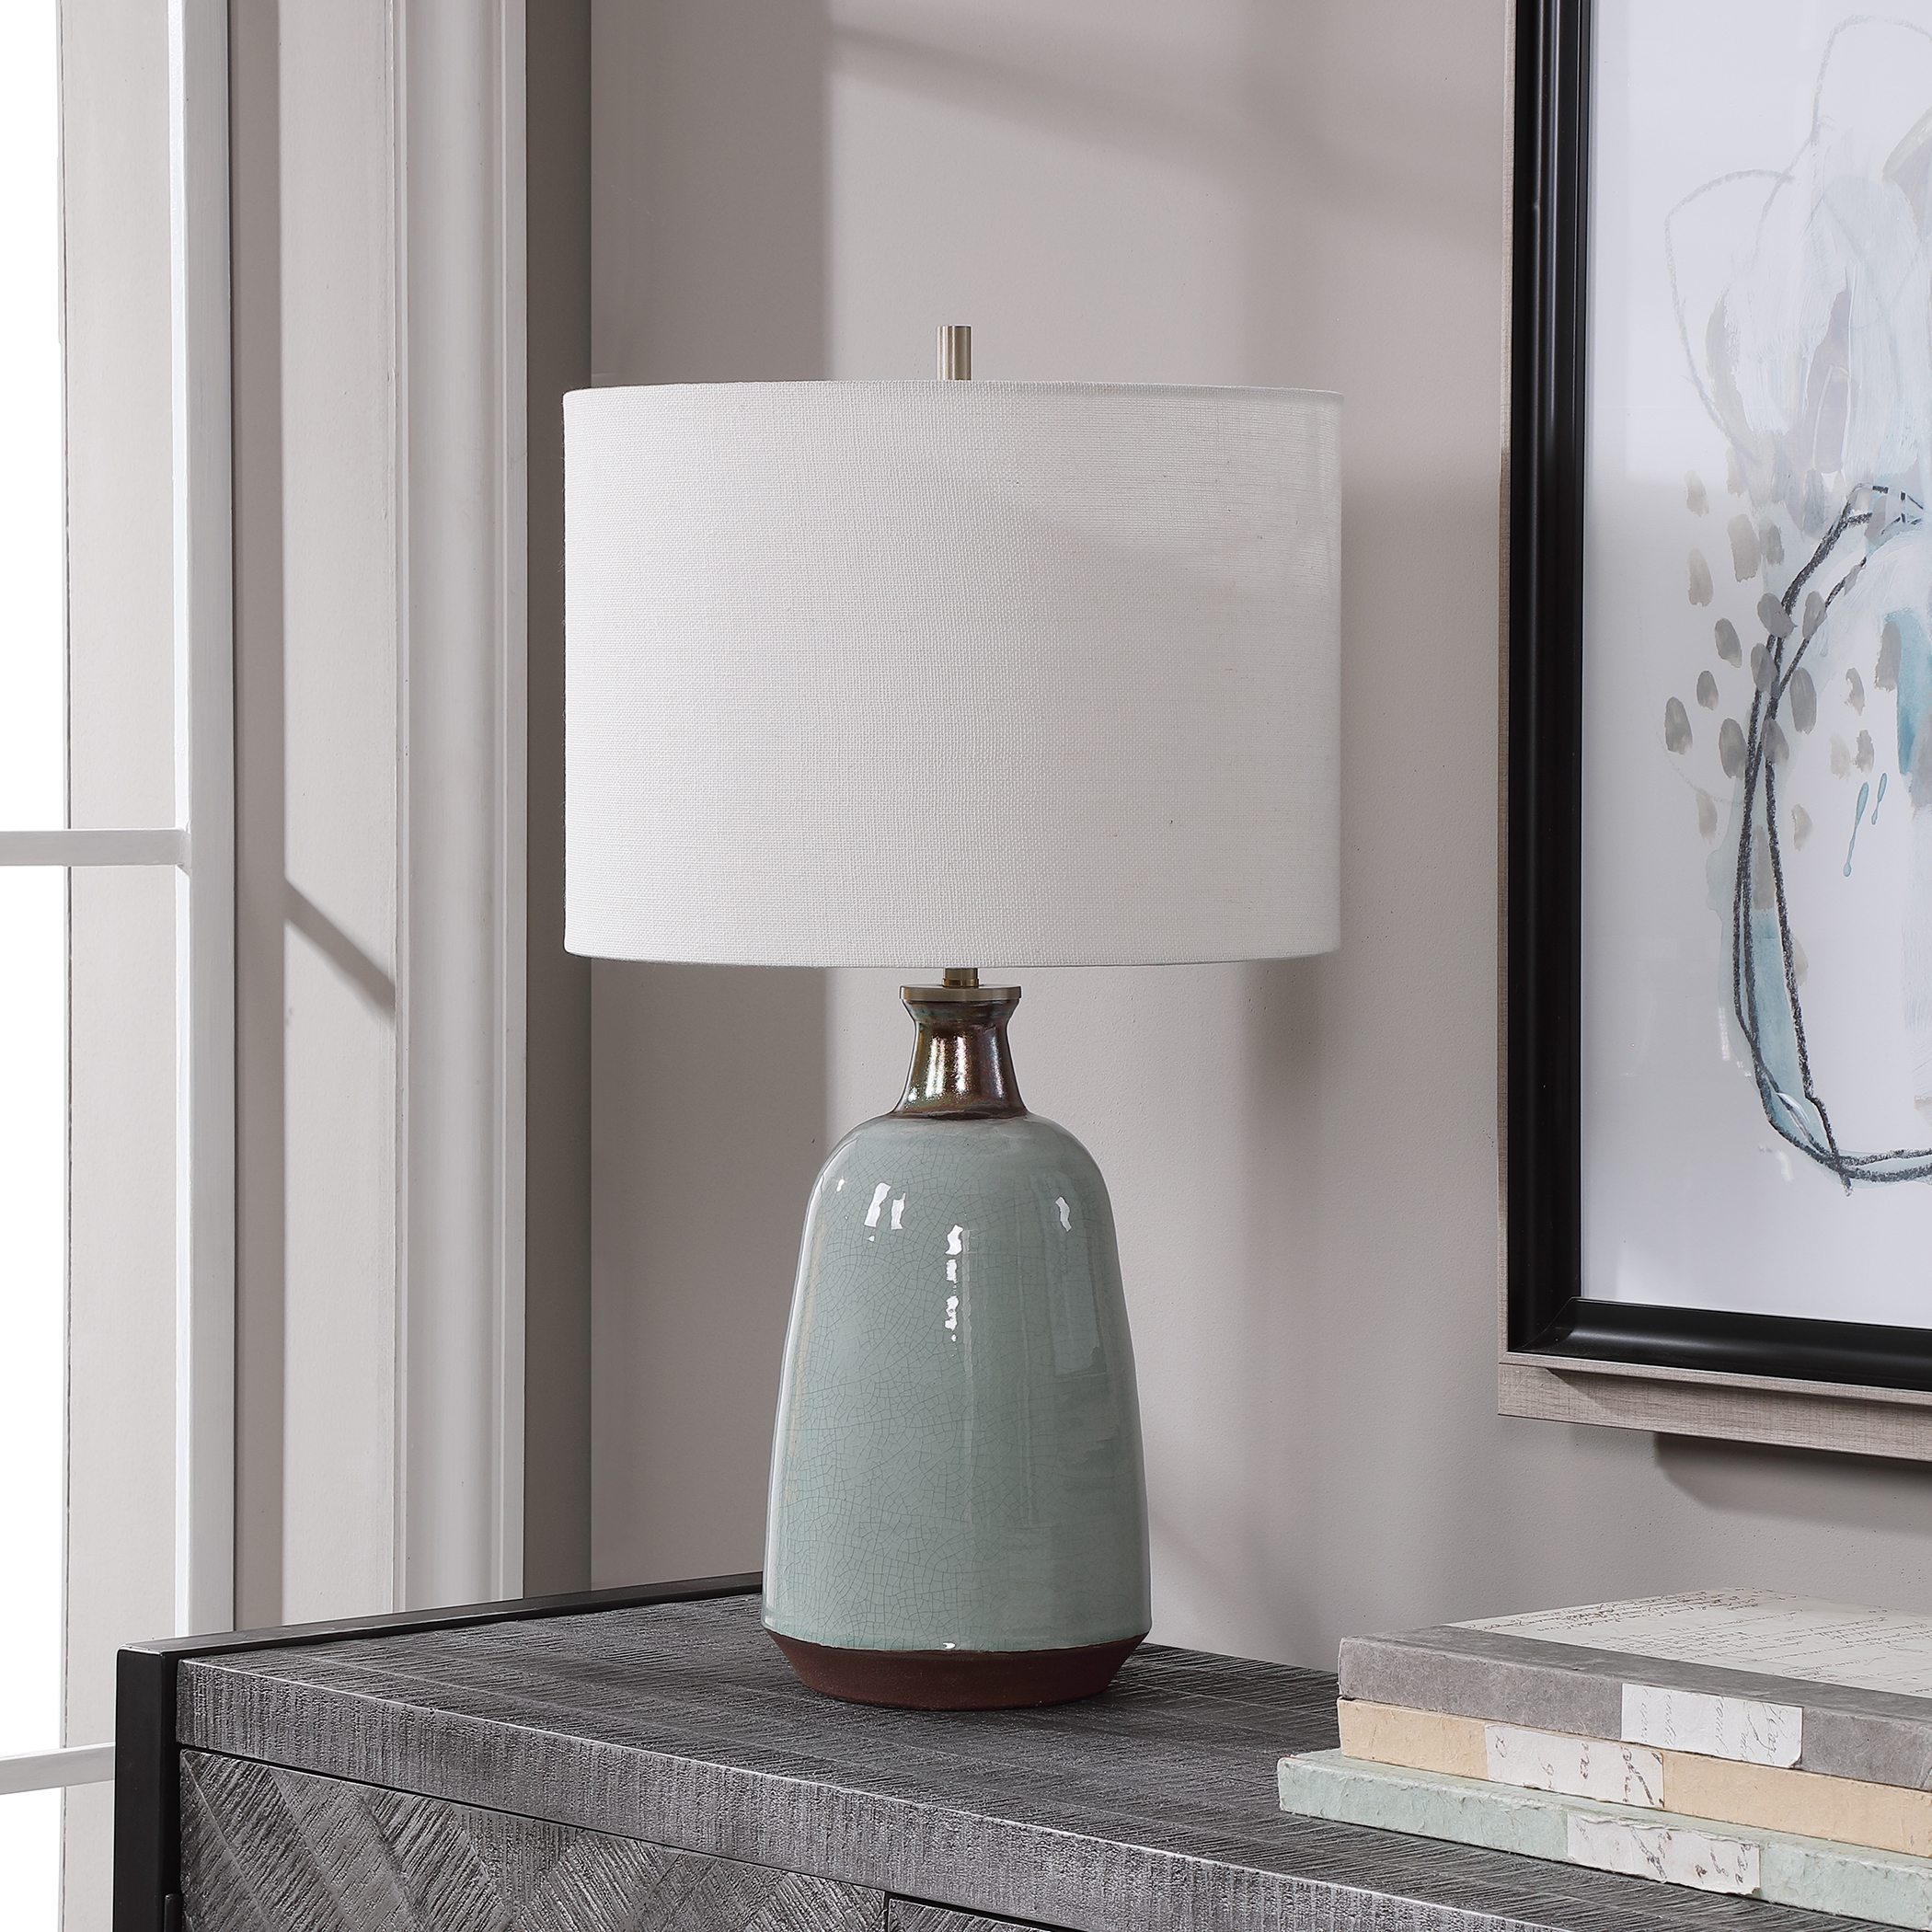 Ceramic Glazed Table Lamp, Turquoise, 24" - Image 3